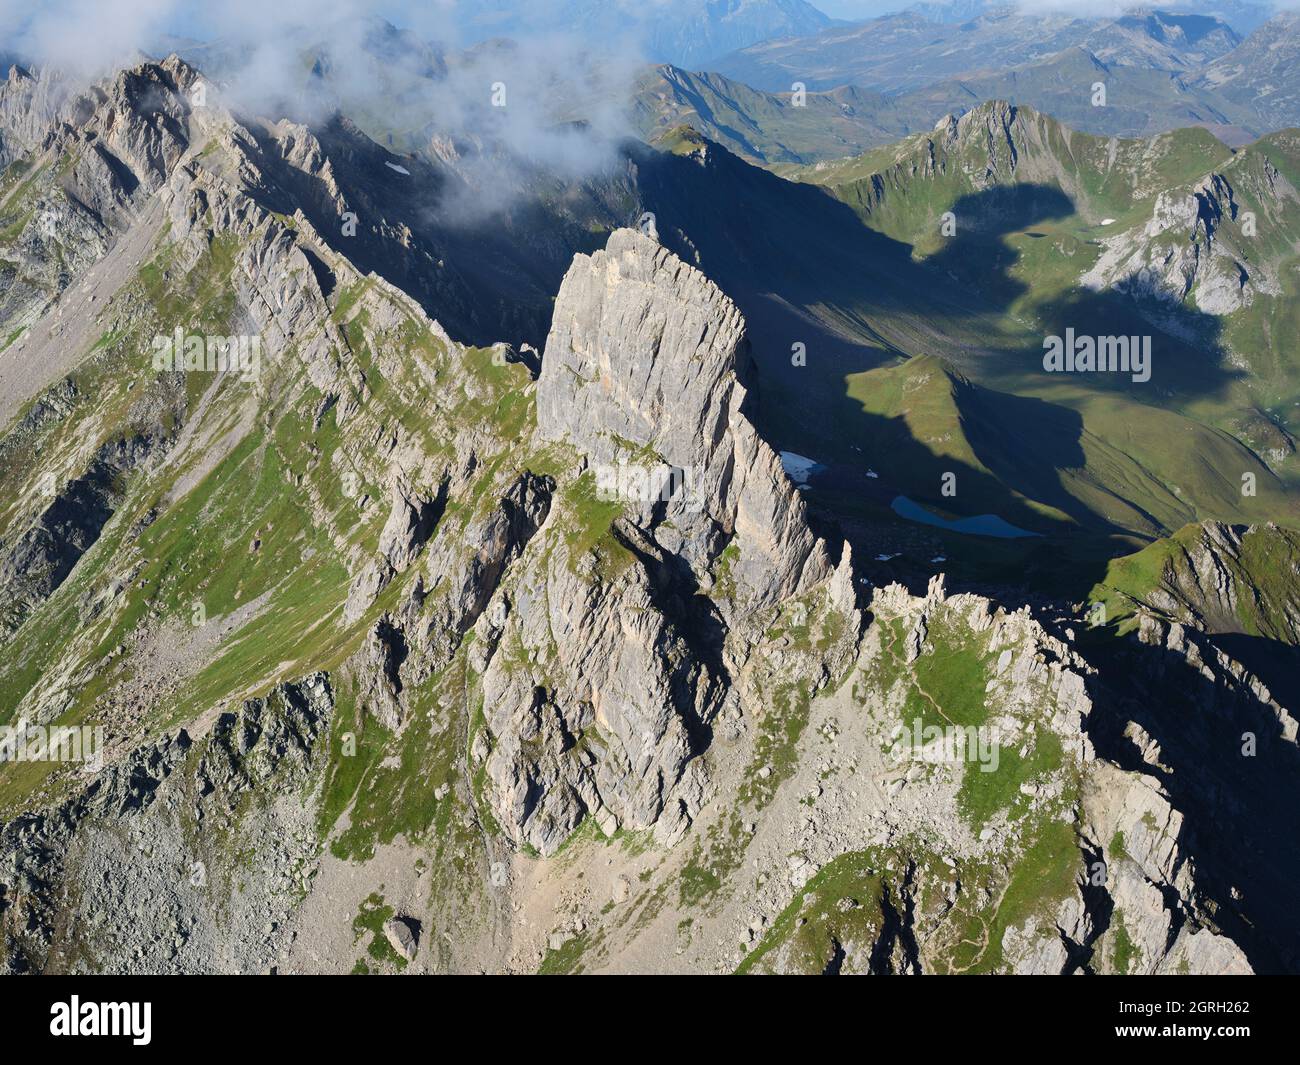 VISTA AEREA. La Pierra menta, un prominente butte su un crinale di montagna. La Plagne-Tarentaise, Savoia, Auvergne-Rhône-Alpes, Francia. Foto Stock